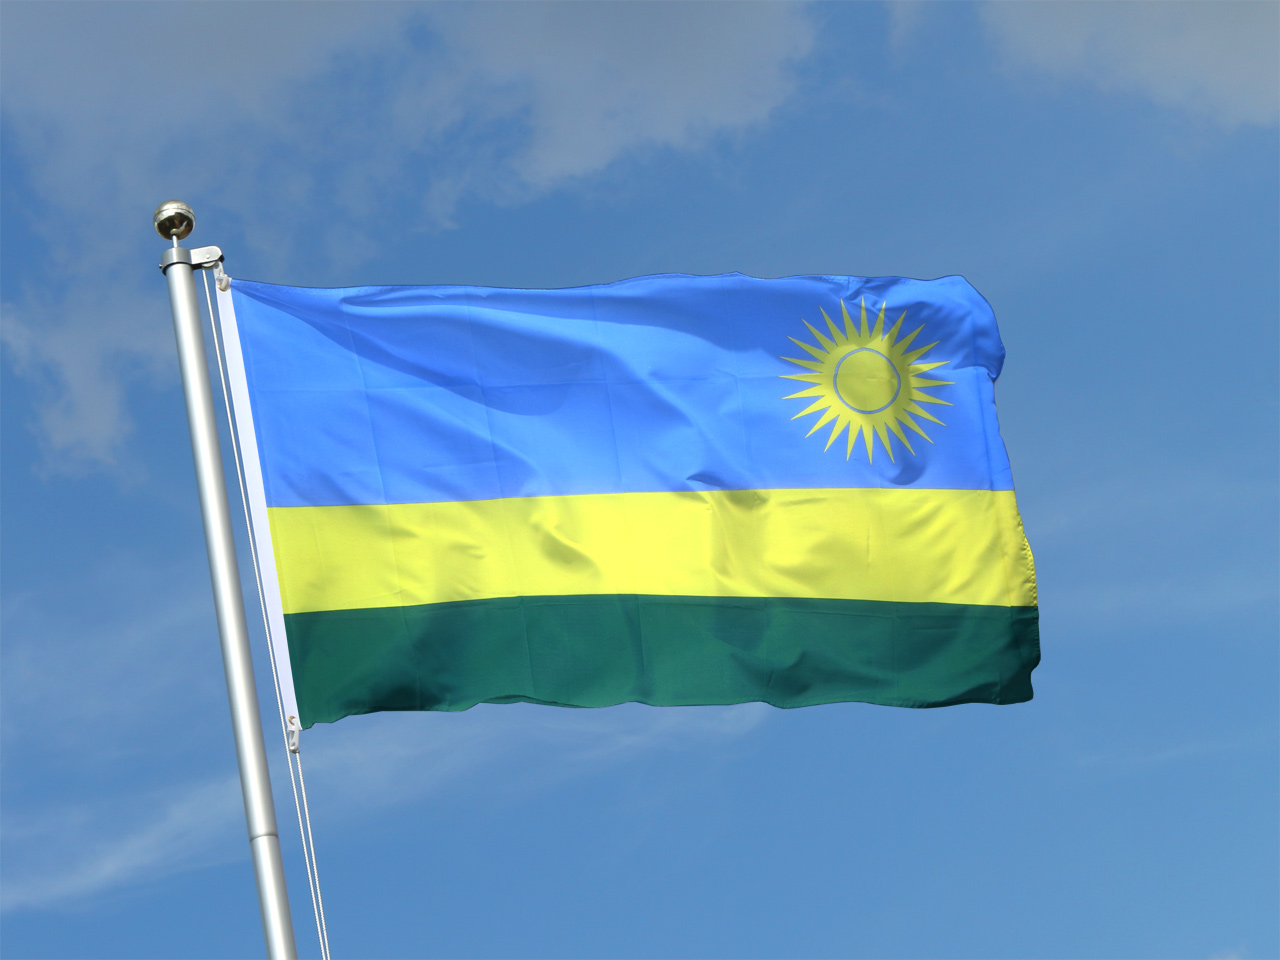 Le Parlement du Rwanda acte le report des législatives initialement prévues en 2023